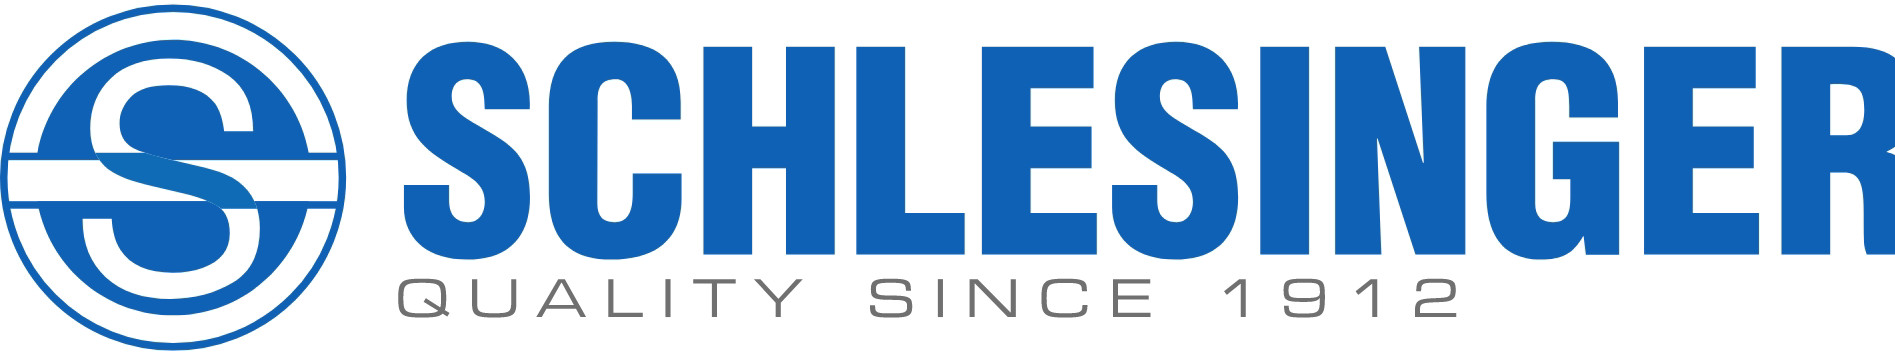 schlesinger logo